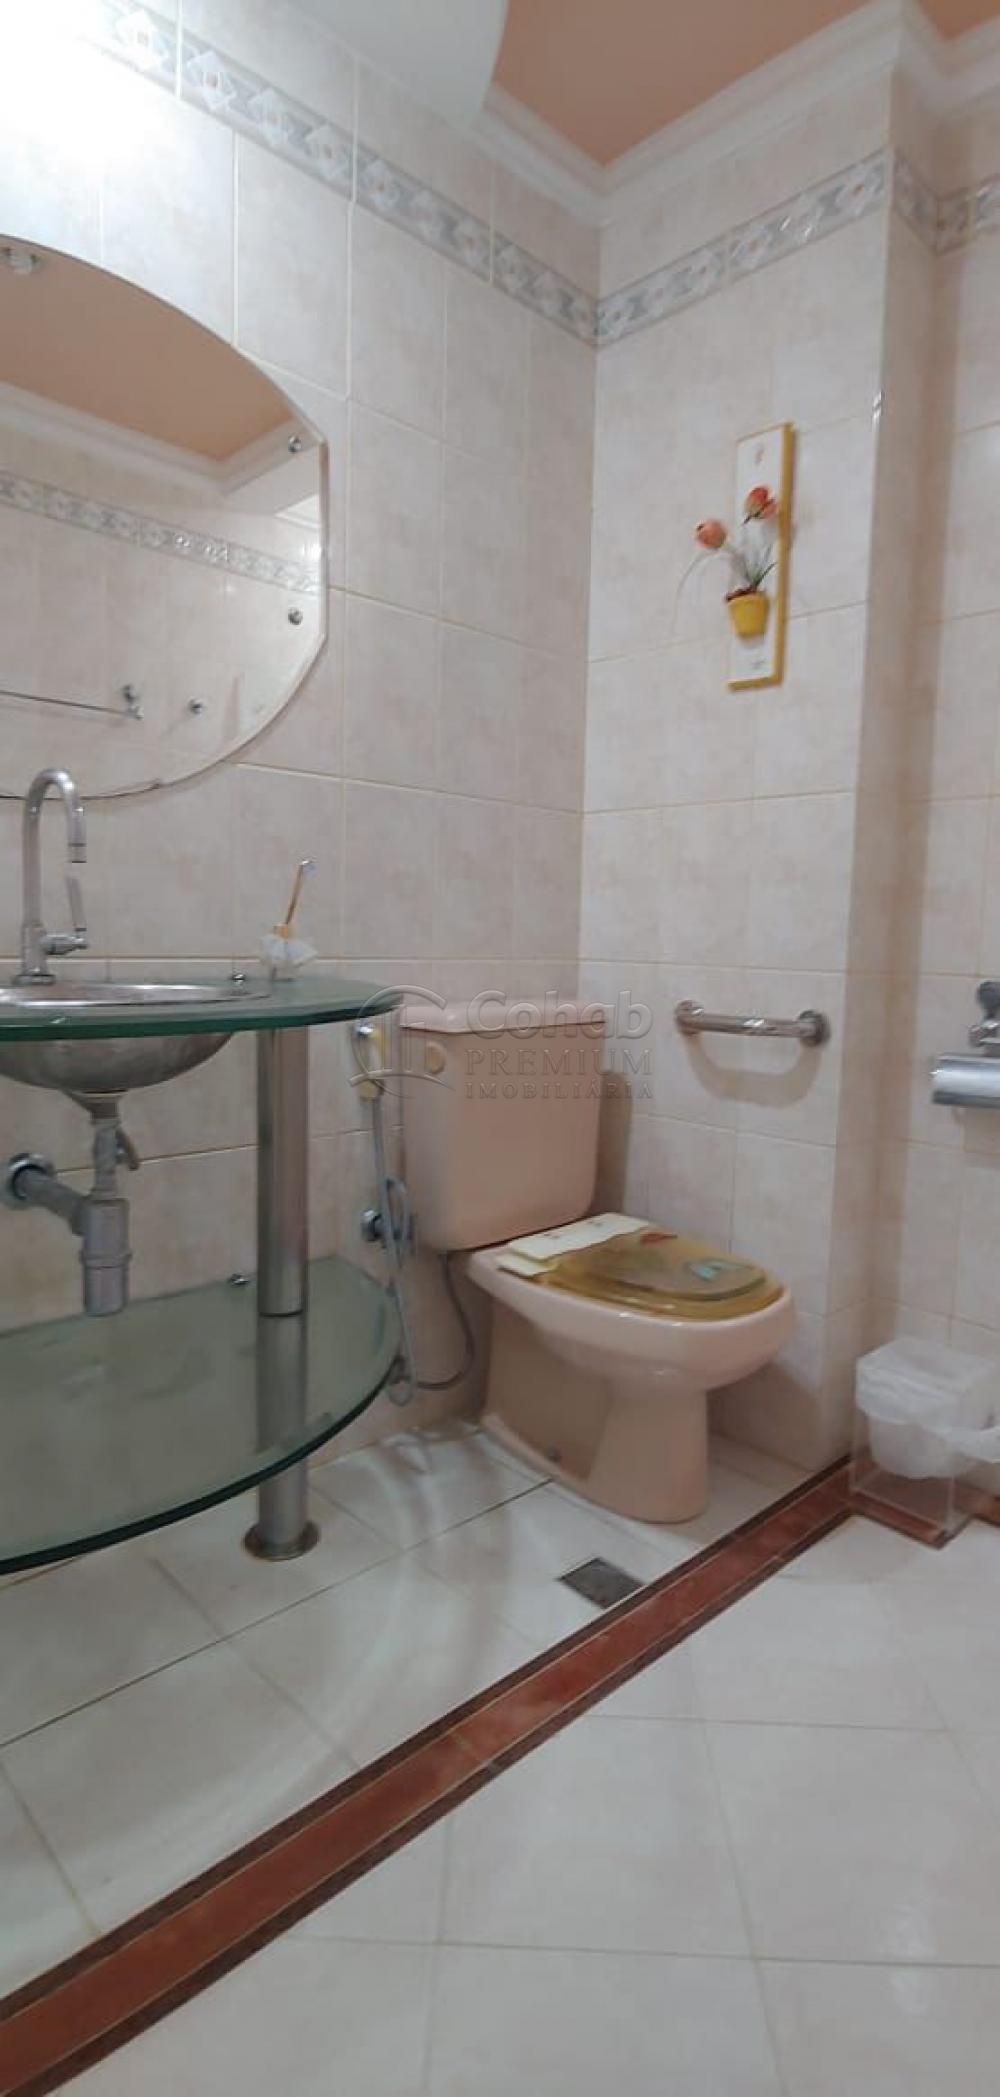 Comprar Apartamento / Padrão em Aracaju R$ 780.000,00 - Foto 17